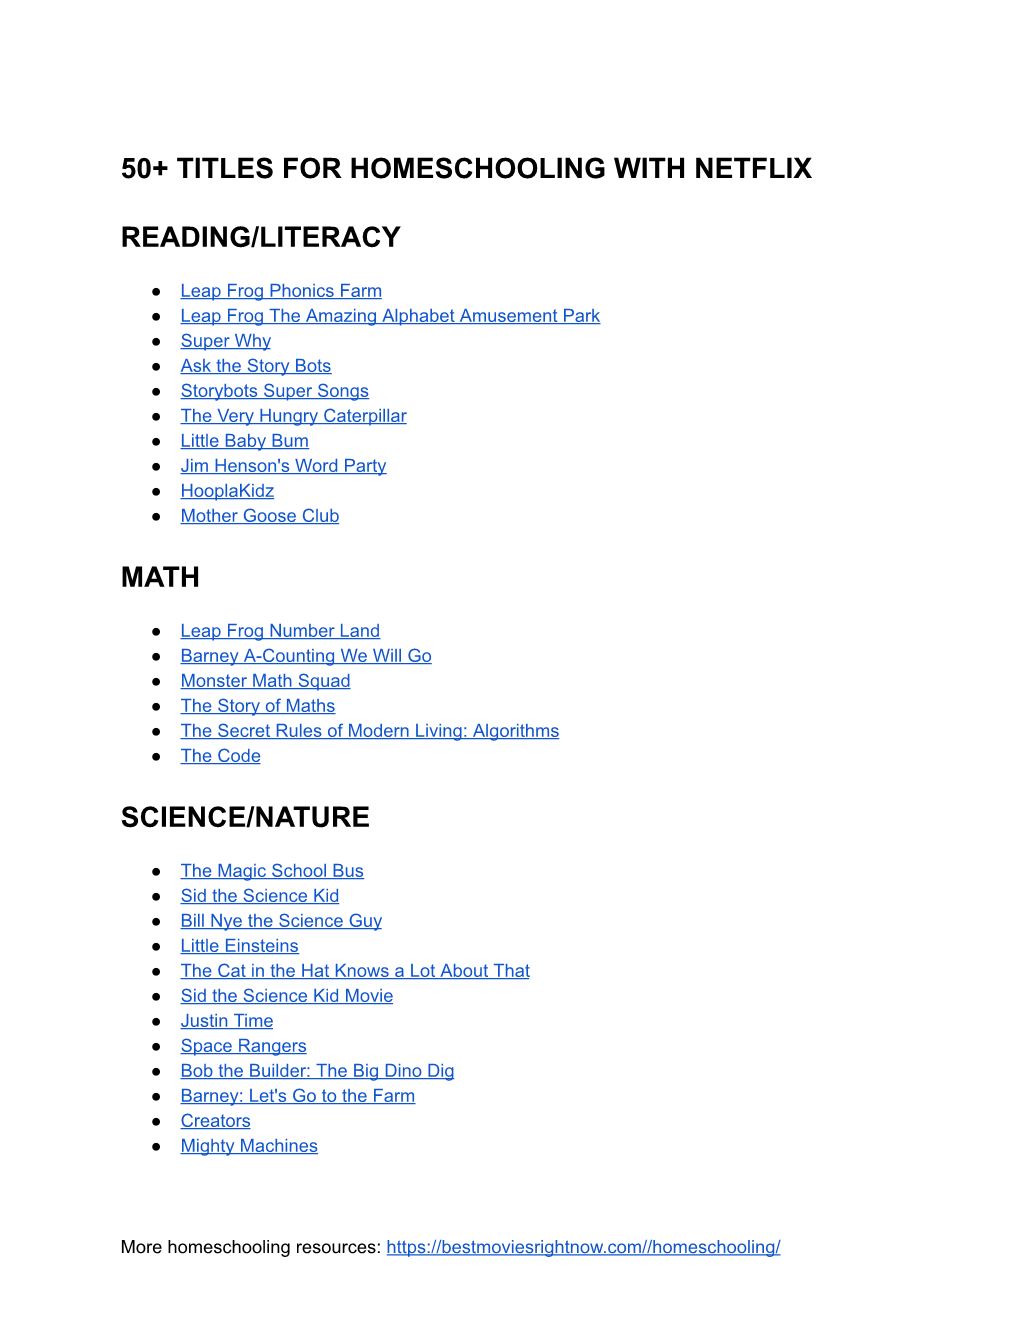 Homeschooling with Netflix